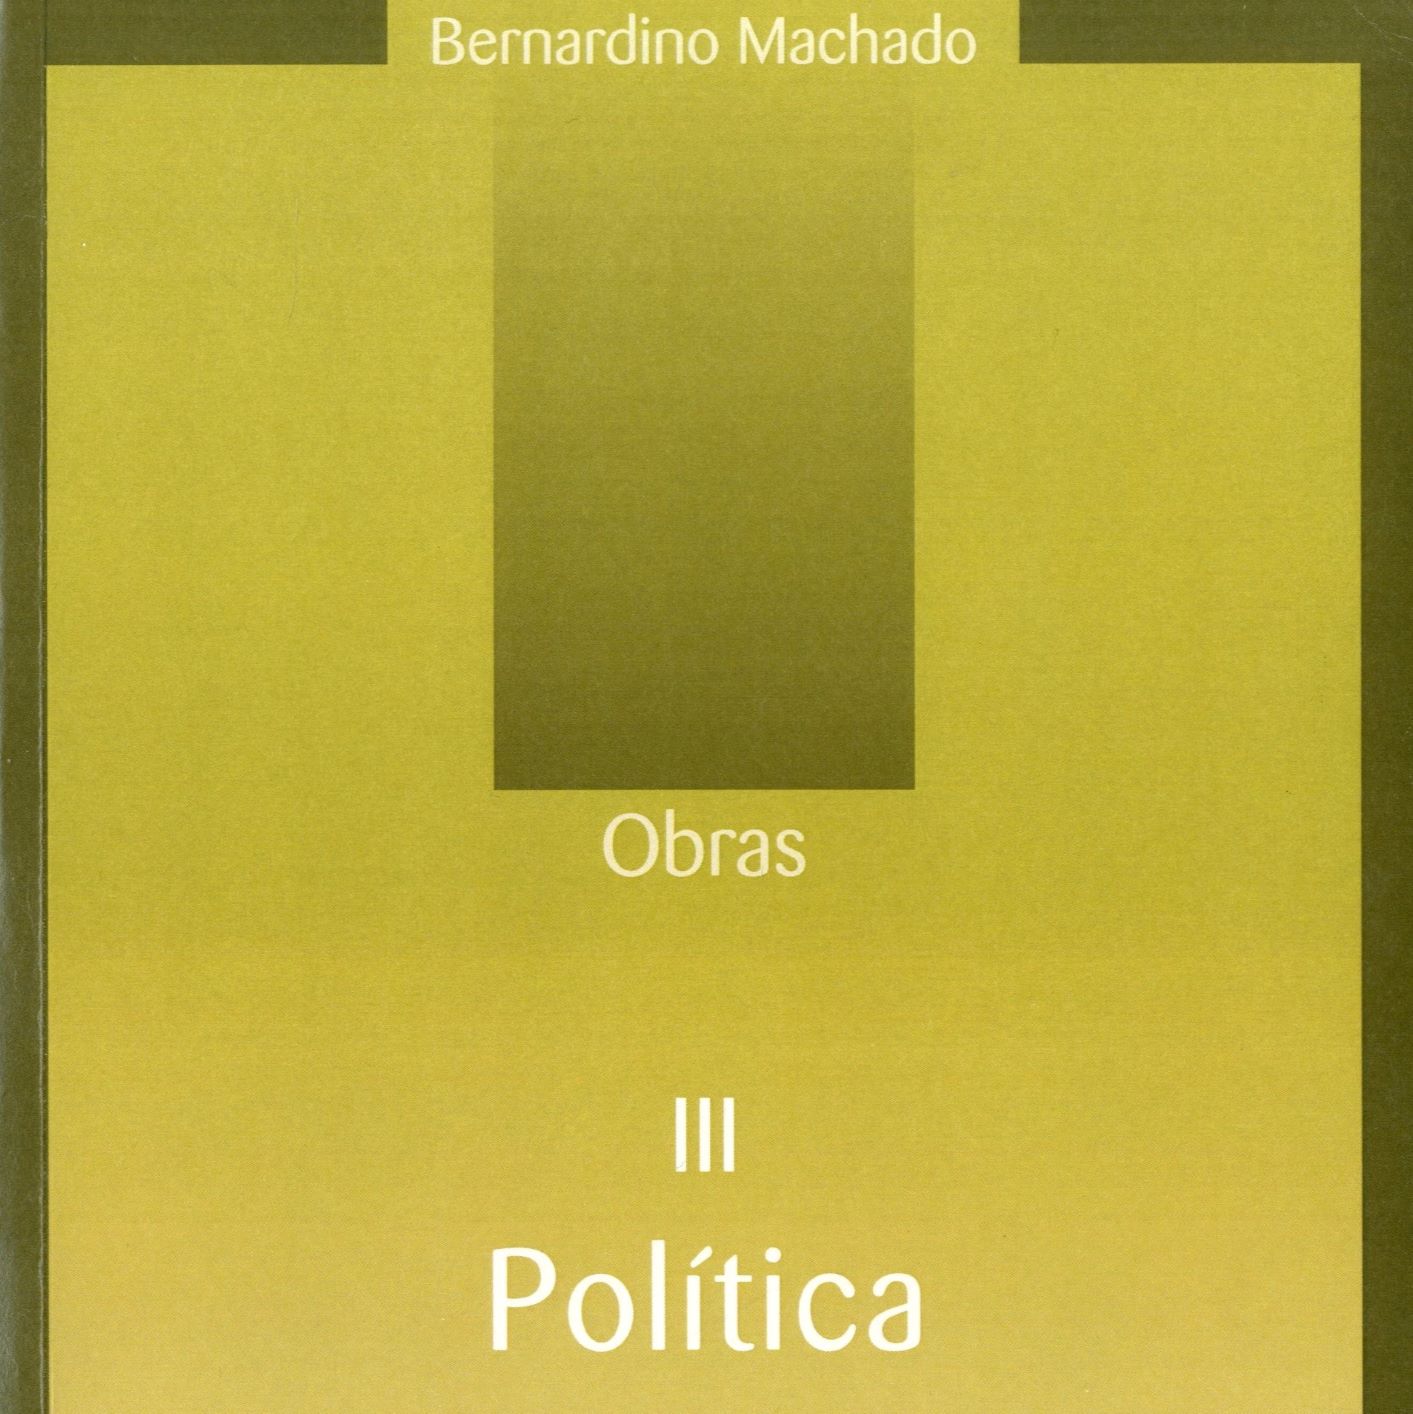 Novo volume da obra política de Bernardino Machado é apresentado sexta-feira